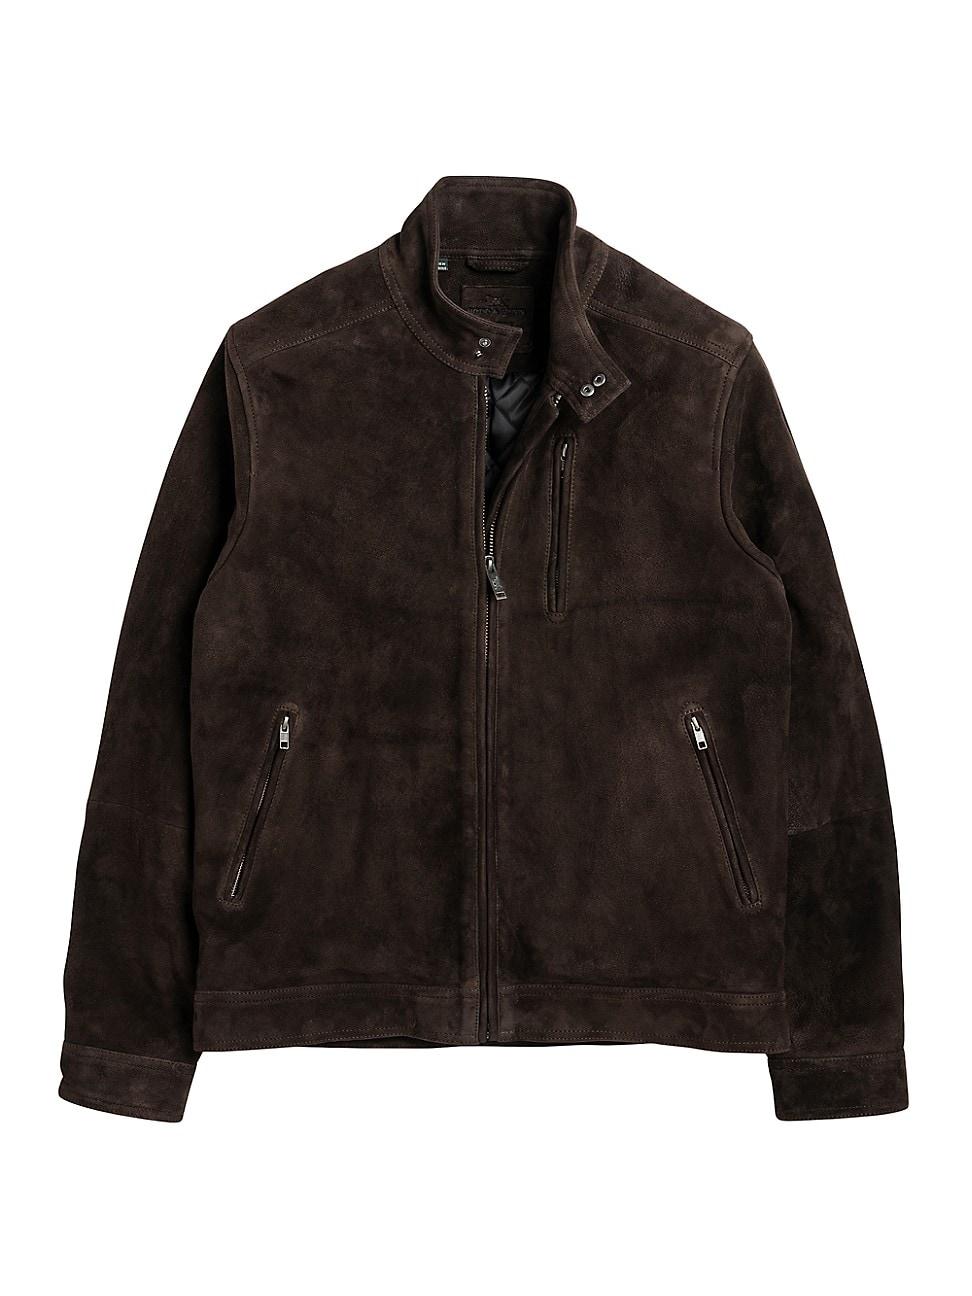 Rodd & Gunn Anchorite Leather Jacket in Black for Men | Lyst